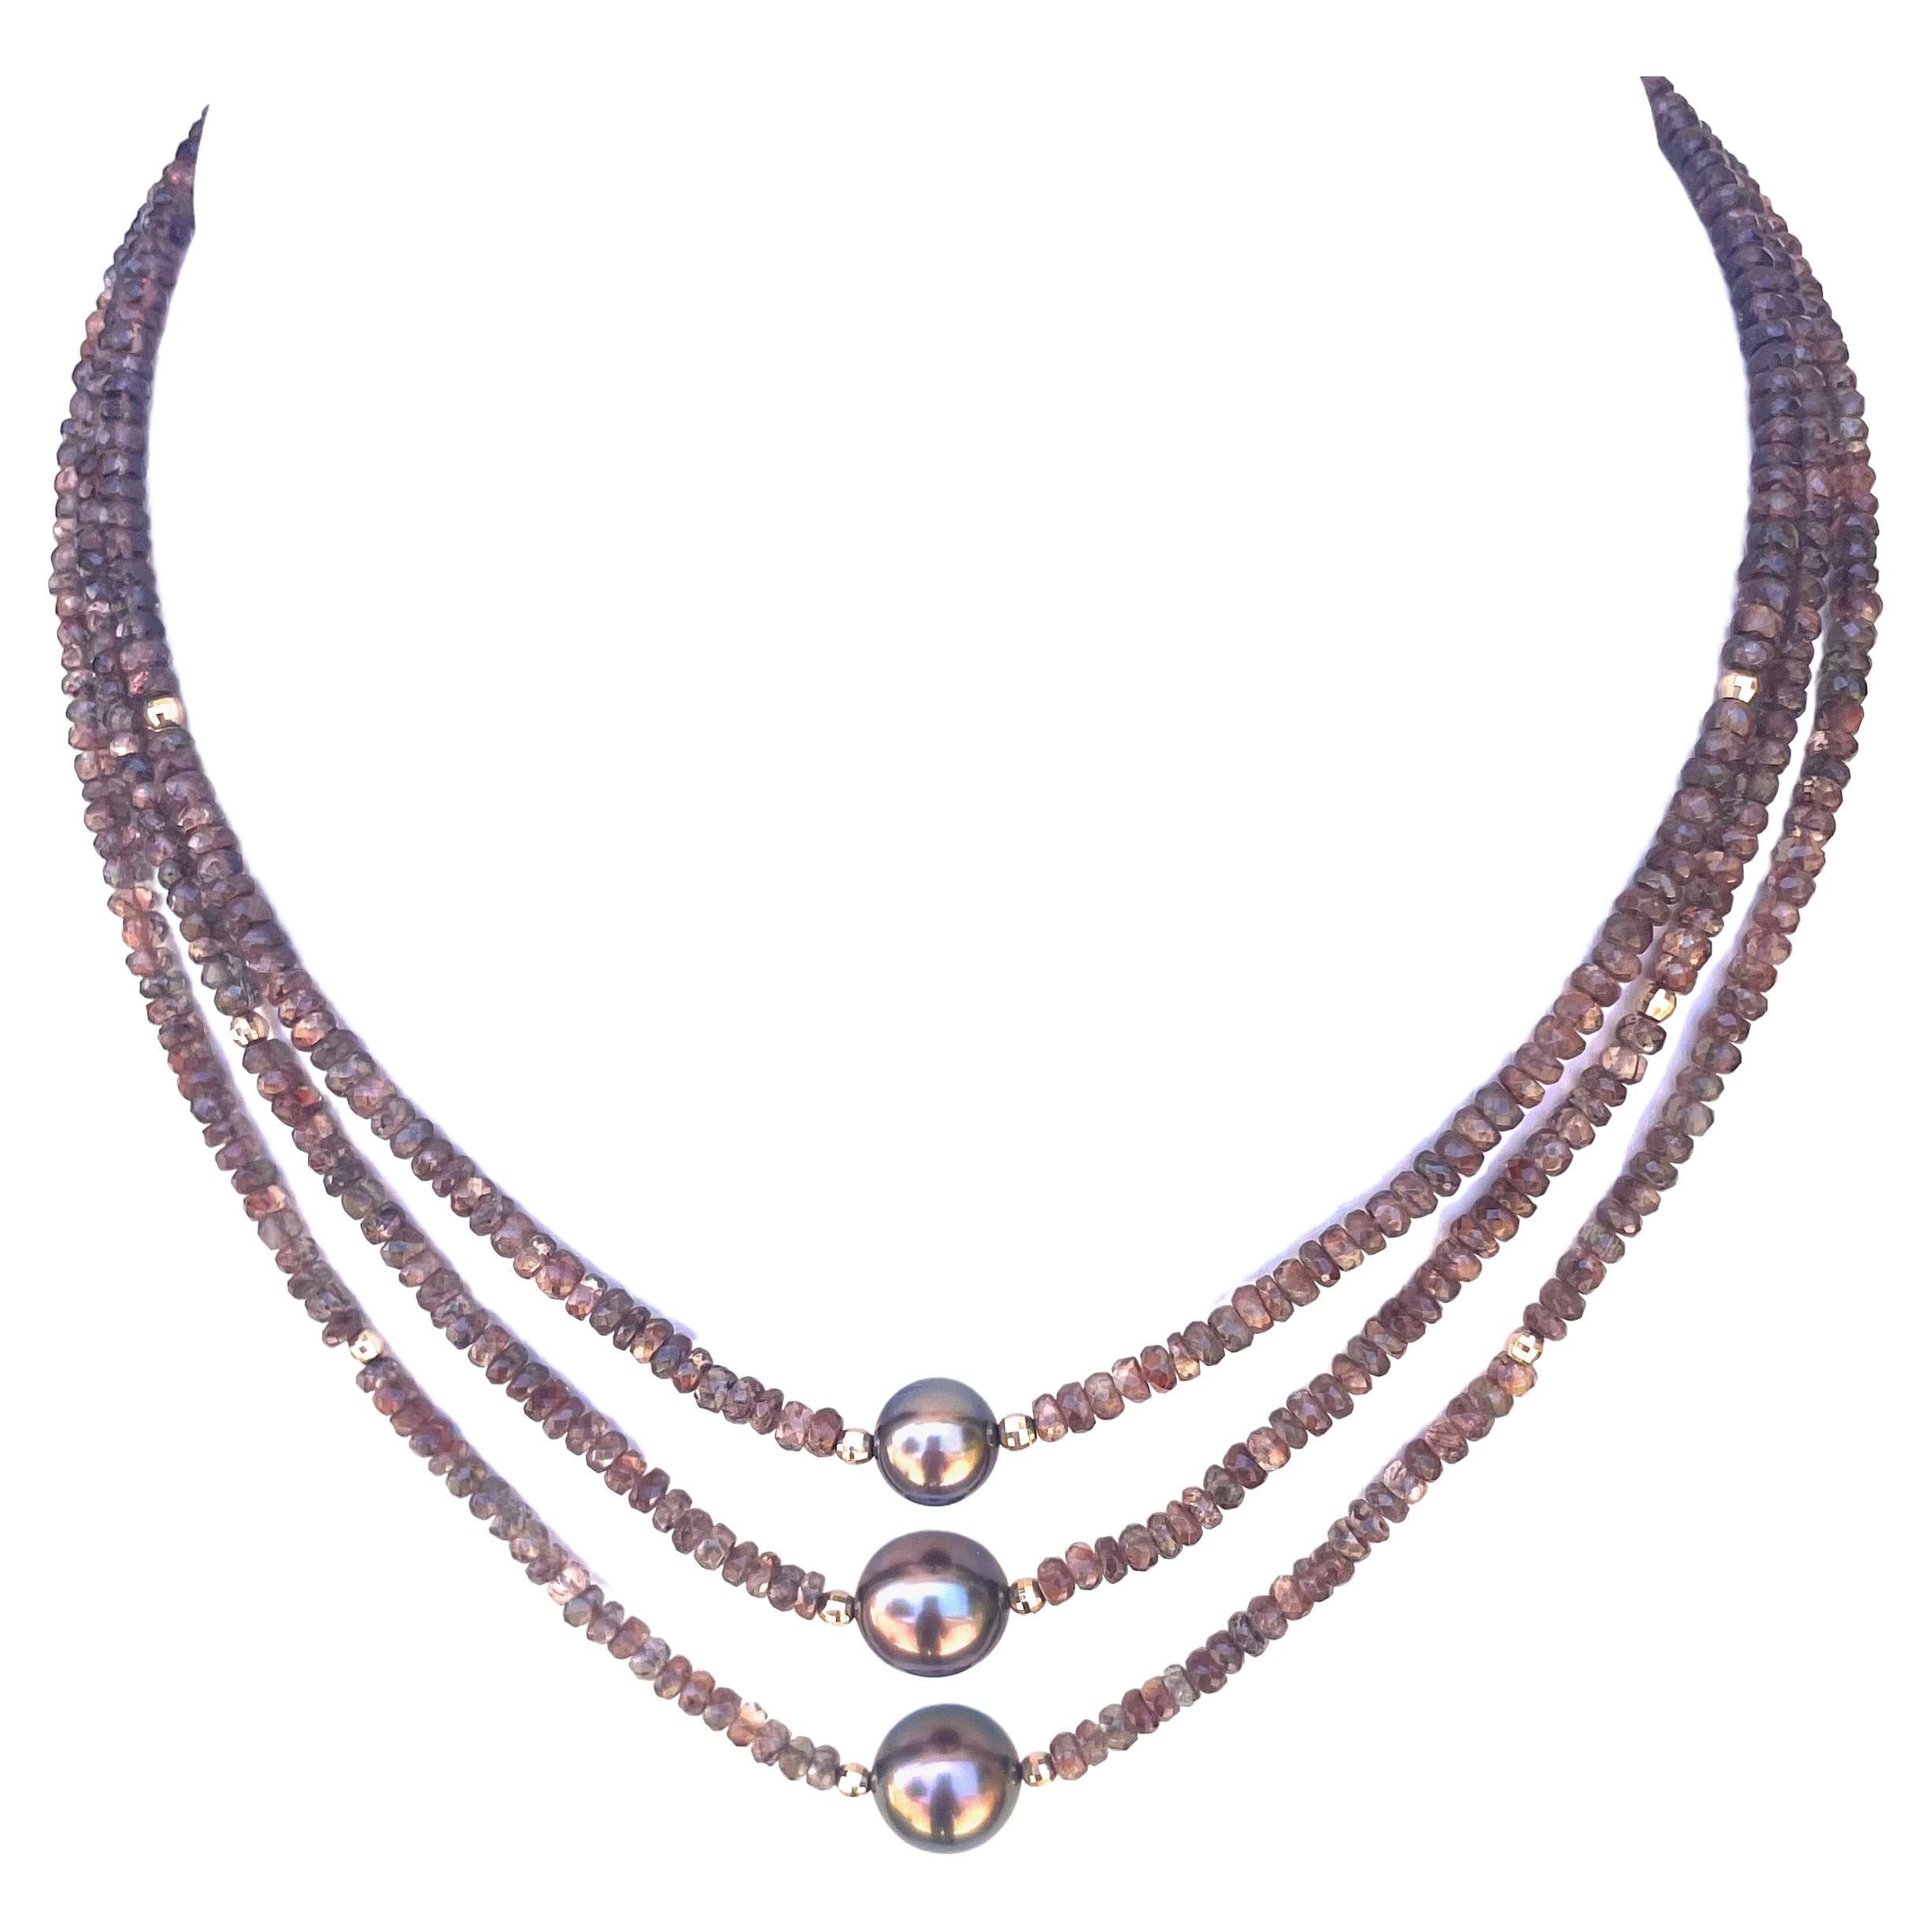 Halskette aus Erdstein Andalusit mit kupferfarbenen Tahiti-Perlen